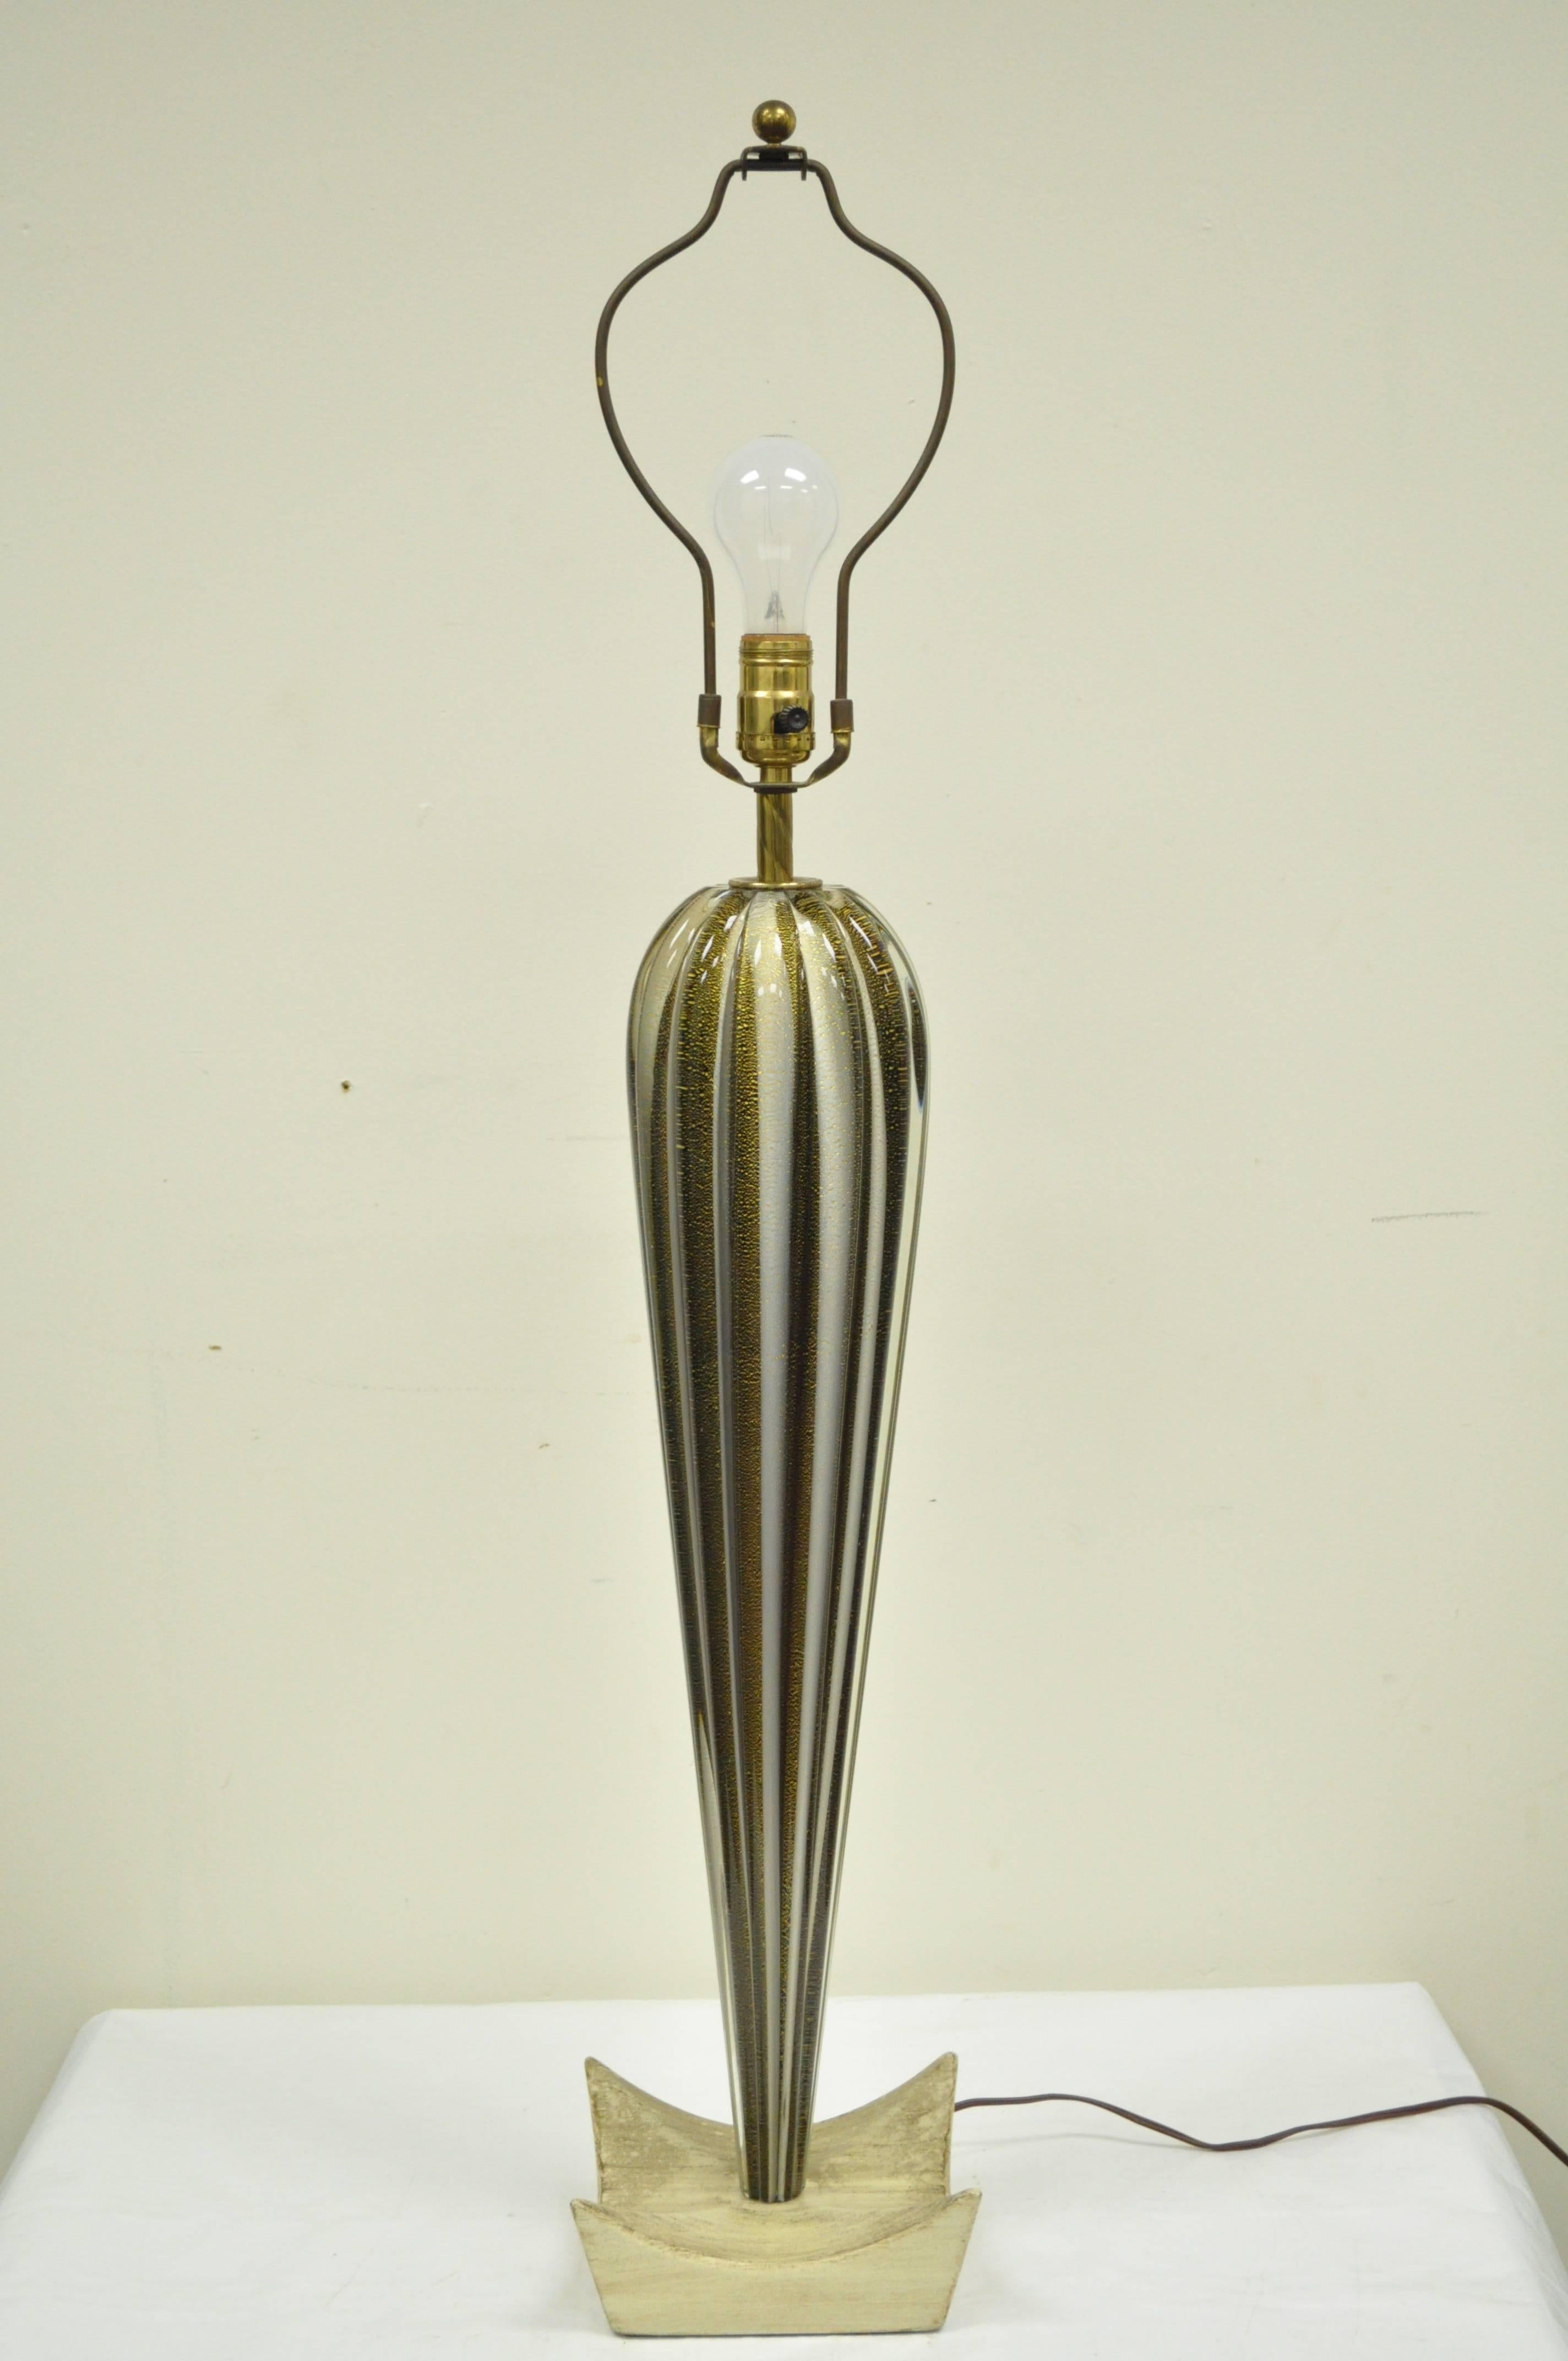 Magnifique lampe de table vintage de Murano attribuée à Barovier&Toso. La lampe présente une forme galbée en verre soufflé 